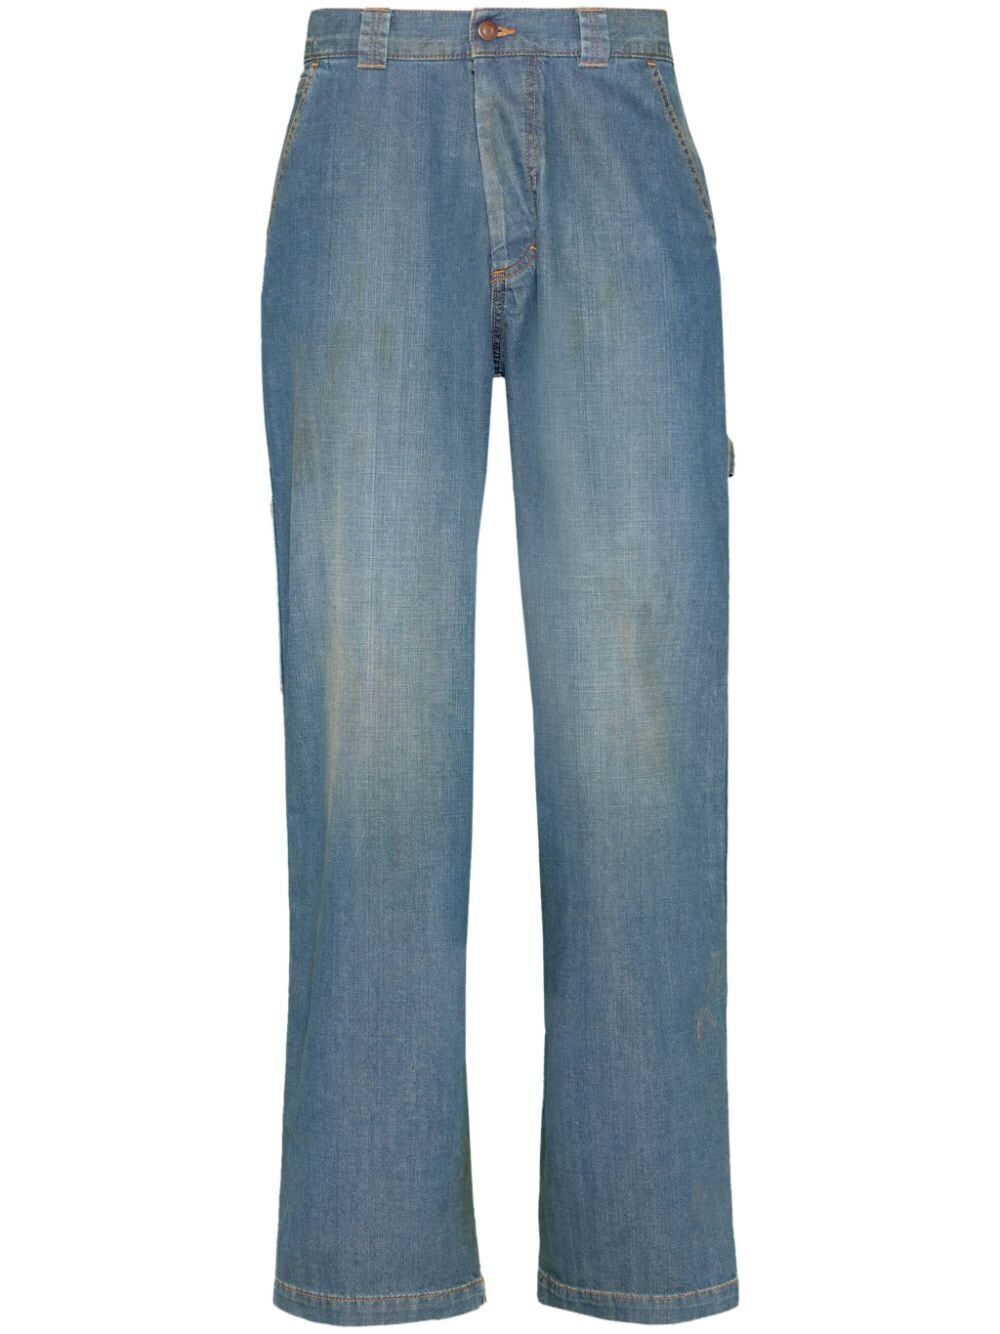 Quần Jeans Chân Rộng Nữ Màu Xanh Dương SS24 Collection